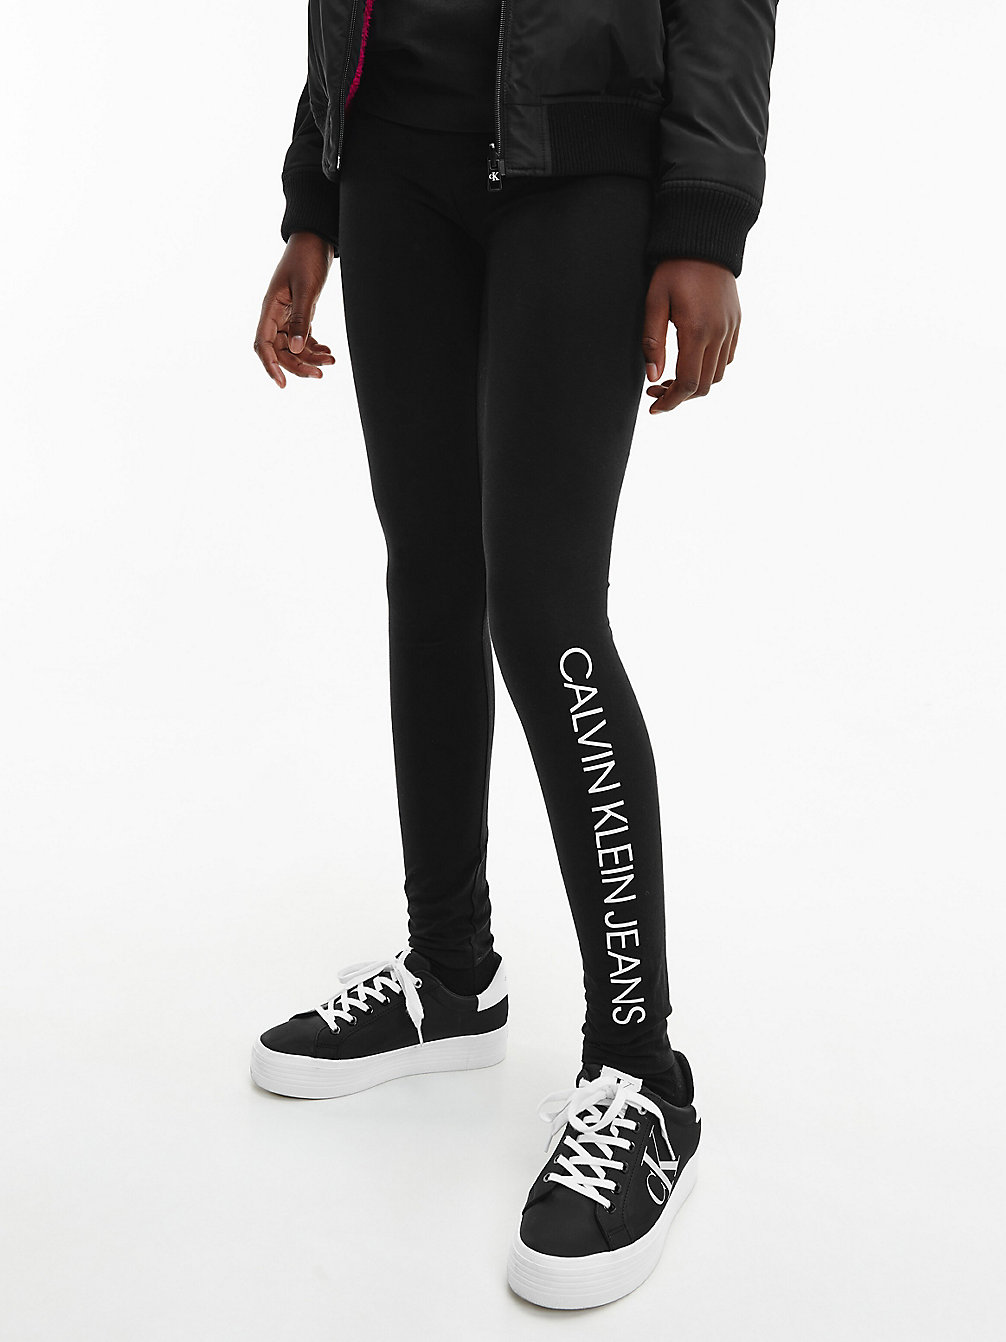 CK BLACK Legging Con Logo undefined girls Calvin Klein